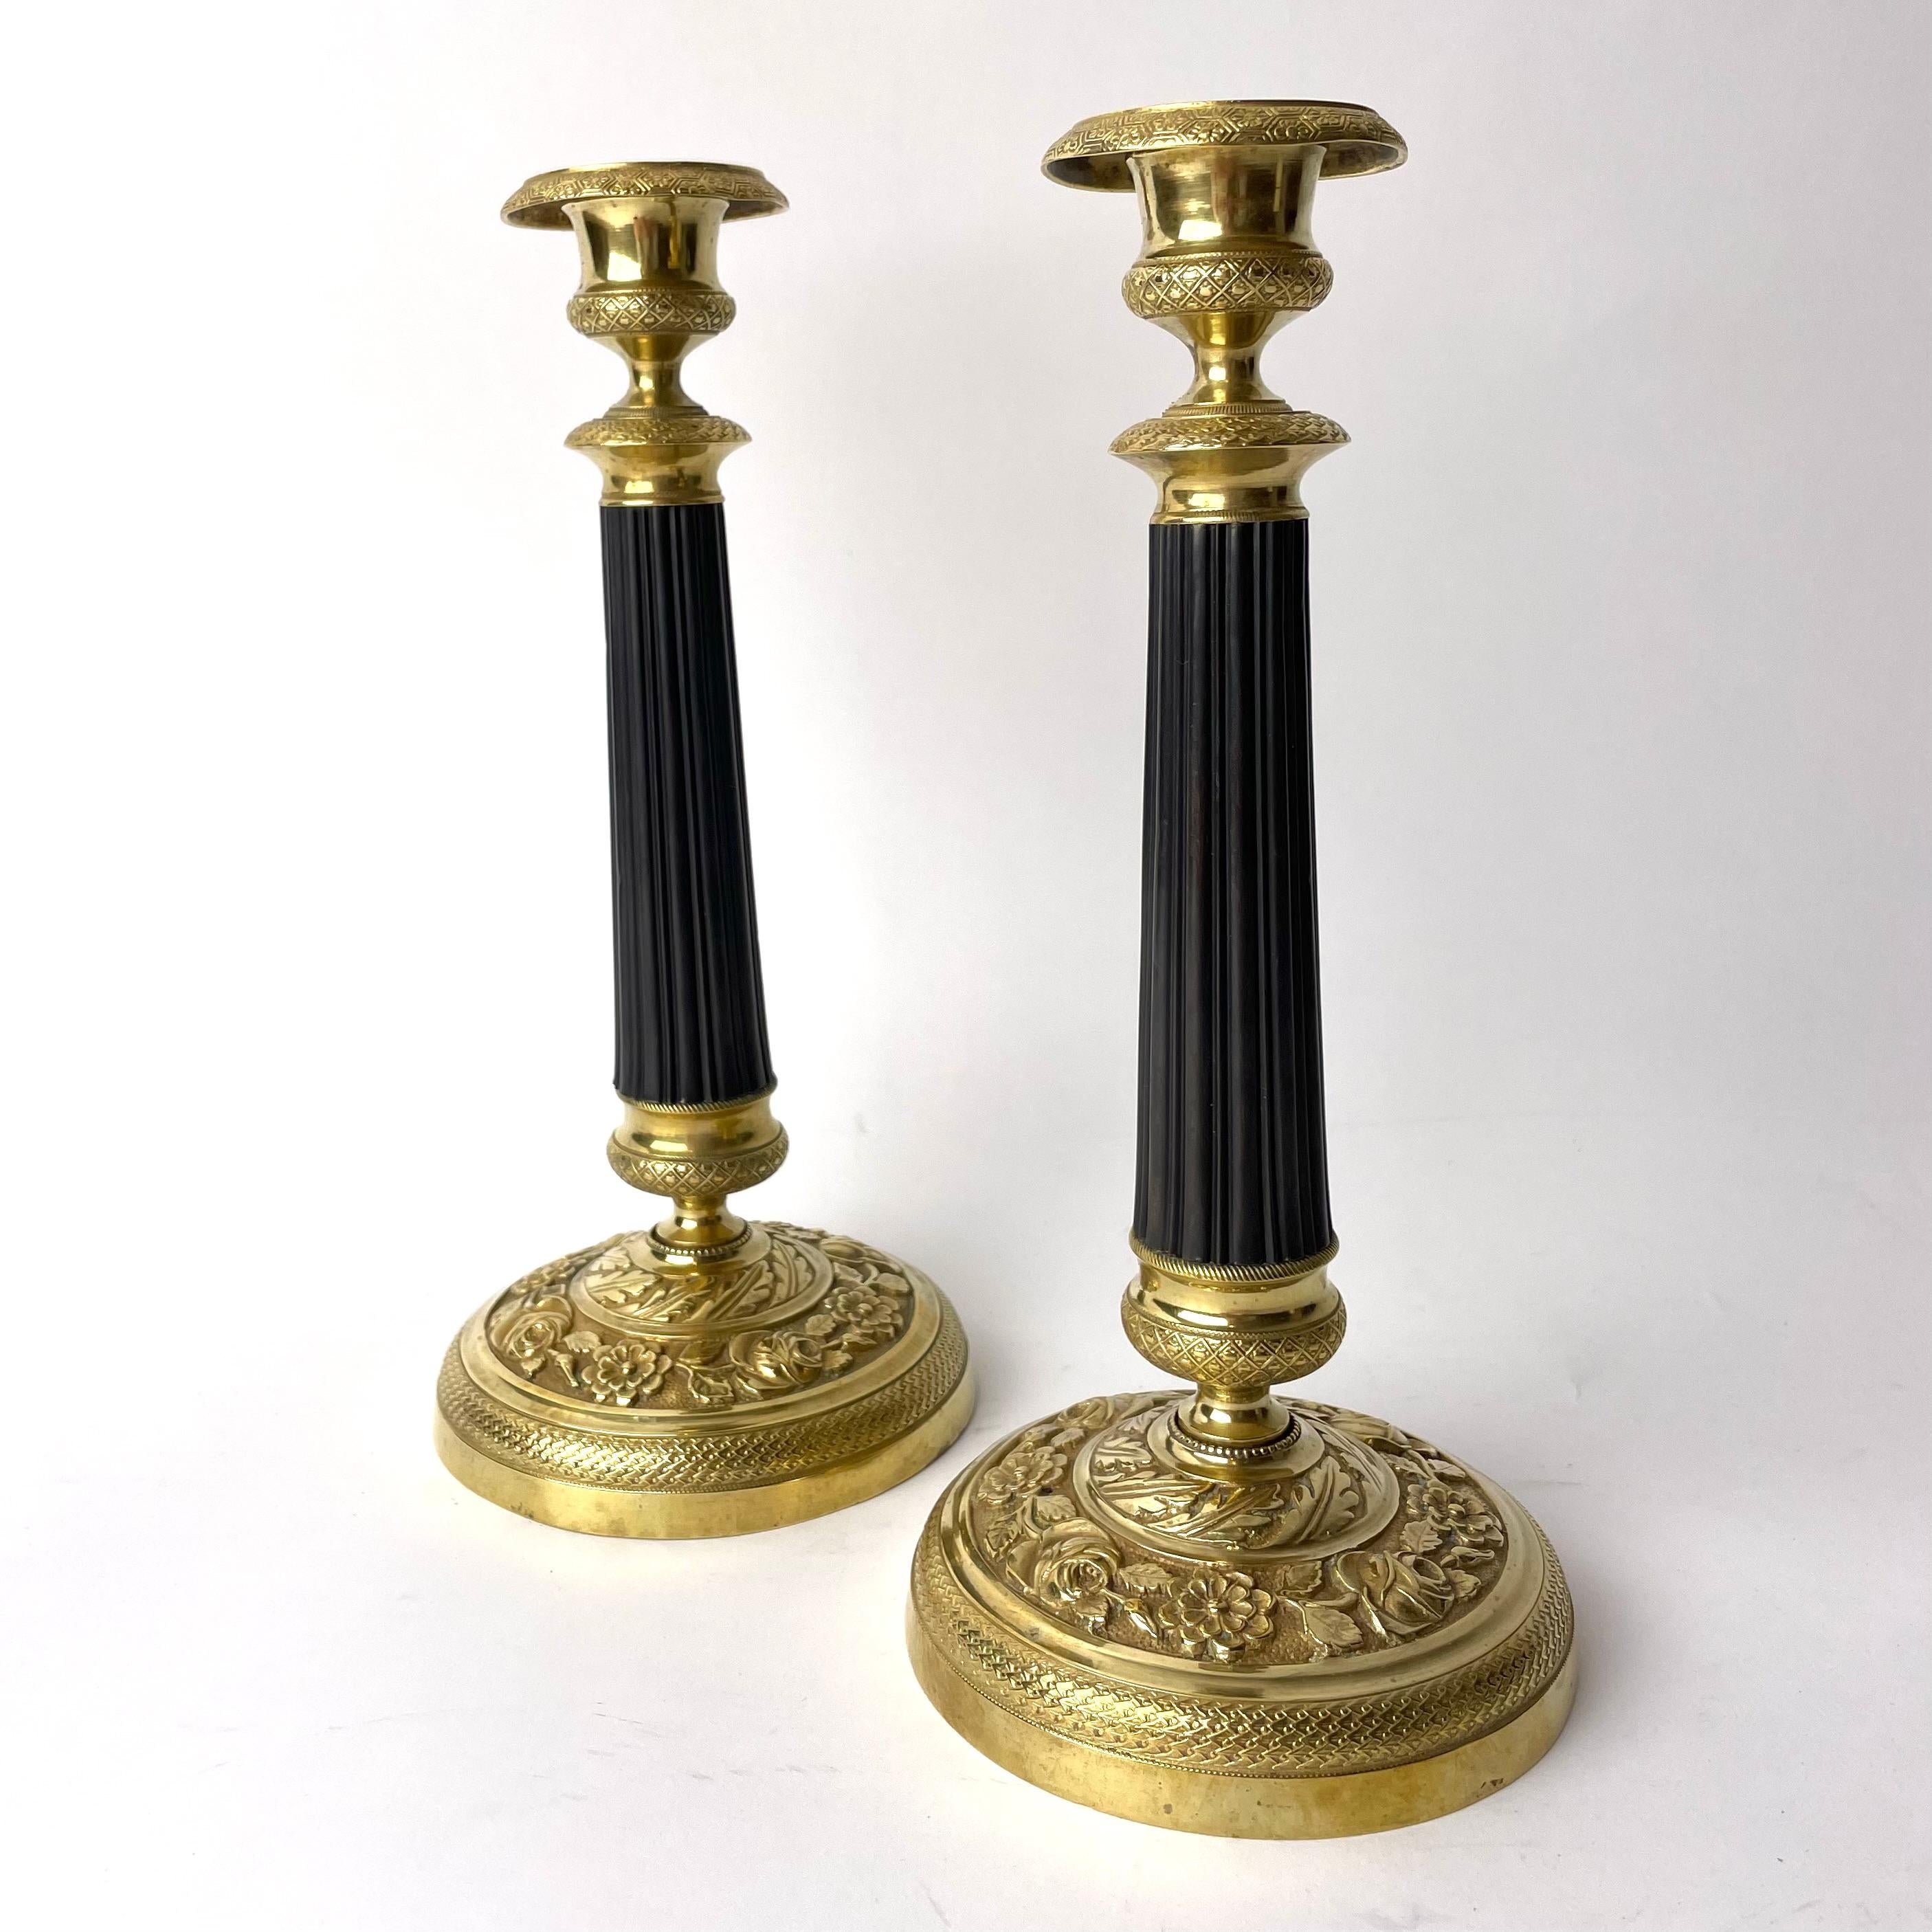 Ein Paar exquisite Empire-Kerzenleuchter, die vergoldetes und patiniertes Messing kombinieren. Hergestellt im Frankreich der 1820er Jahre. Verschiedene verschlungene Rosen-, Blumen- und Blattmuster zieren die Sockel aus vergoldetem Messing. Diese